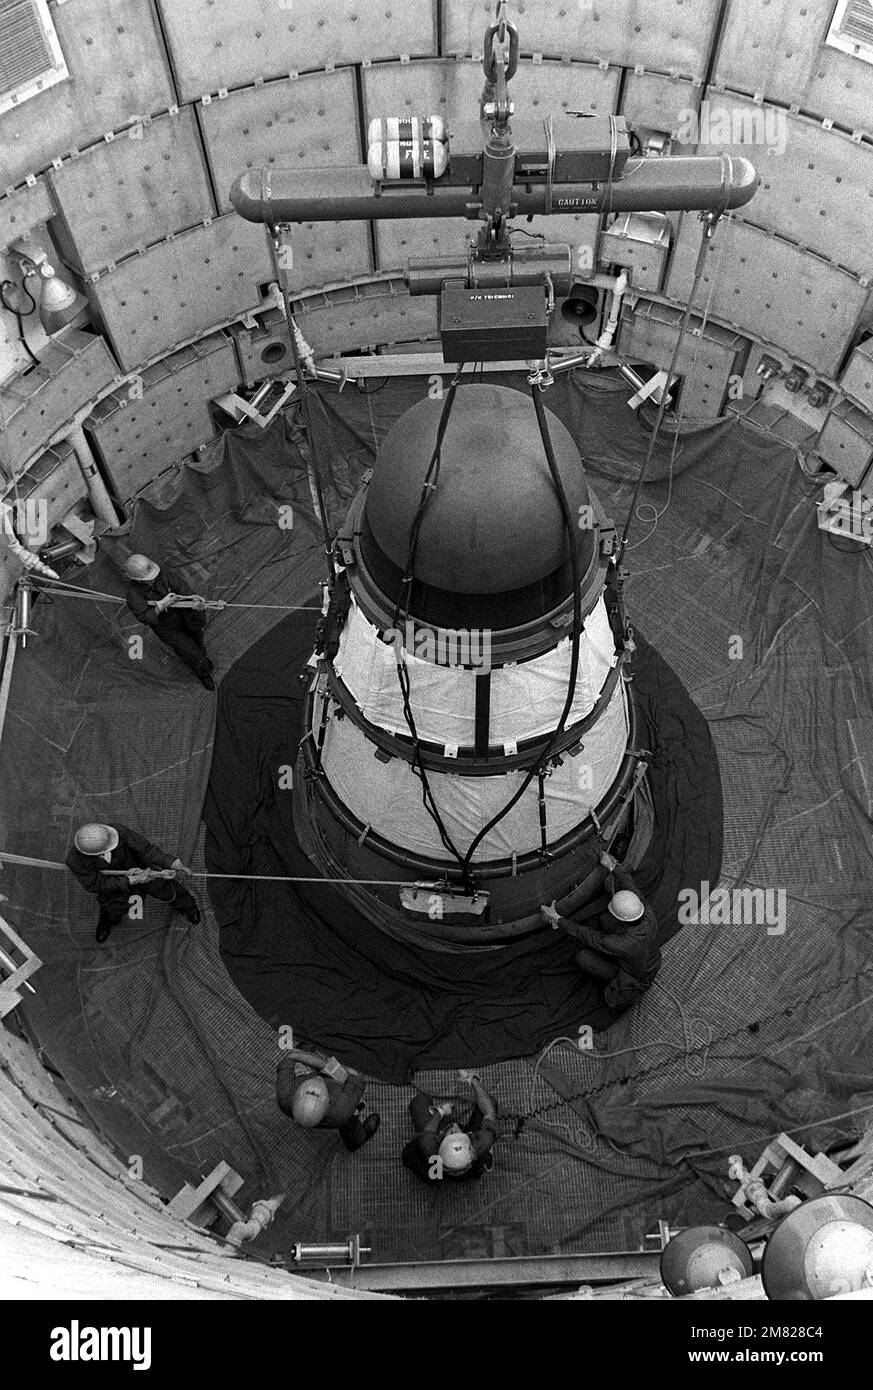 Les membres de l'escadron de maintenance des missiles 390th utilisent des cordes pour guider un véhicule de réentrée Titan II lorsqu'il est soulevé de son silo au site no 570-5. Base: Davis-Monthan Air Force base État: Arizona (AZ) pays: Etats-Unis d'Amérique (USA) Banque D'Images